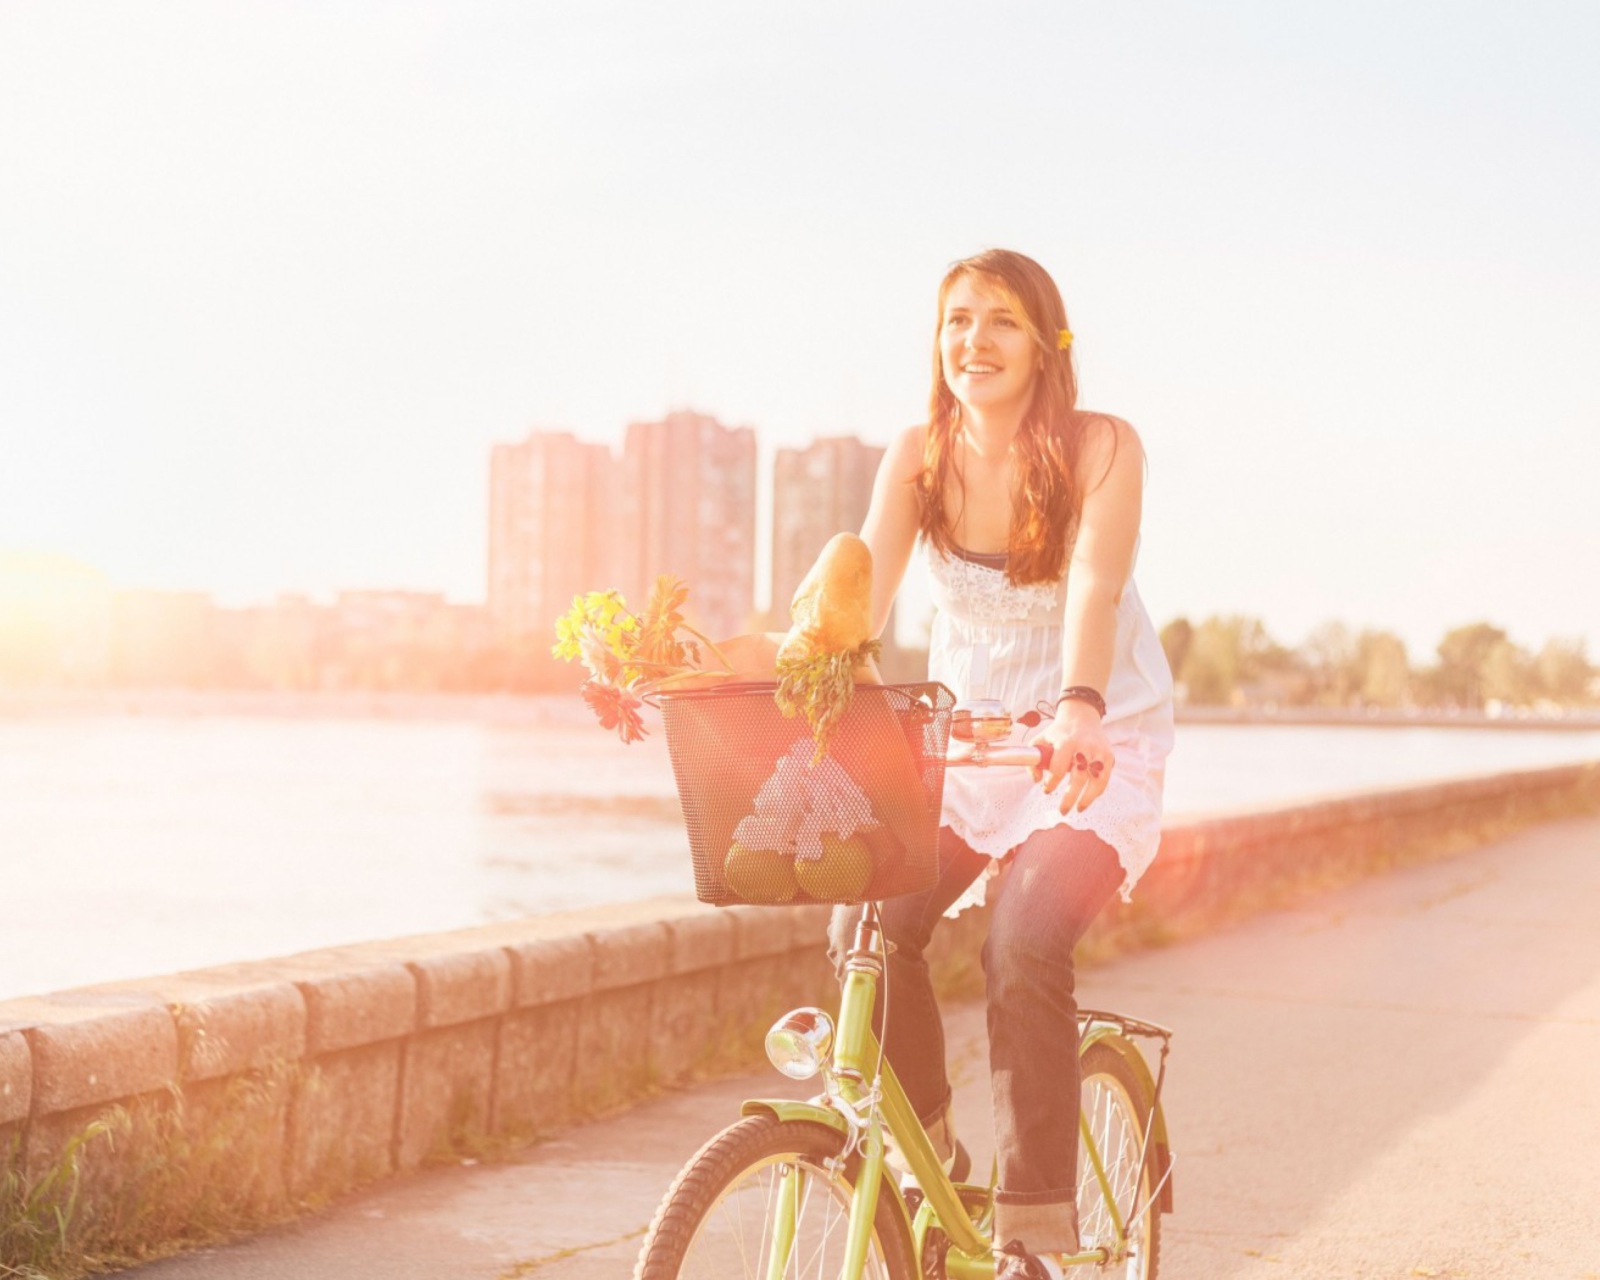 Sfondi Girl On Bicycle In Sun Lights 1600x1280